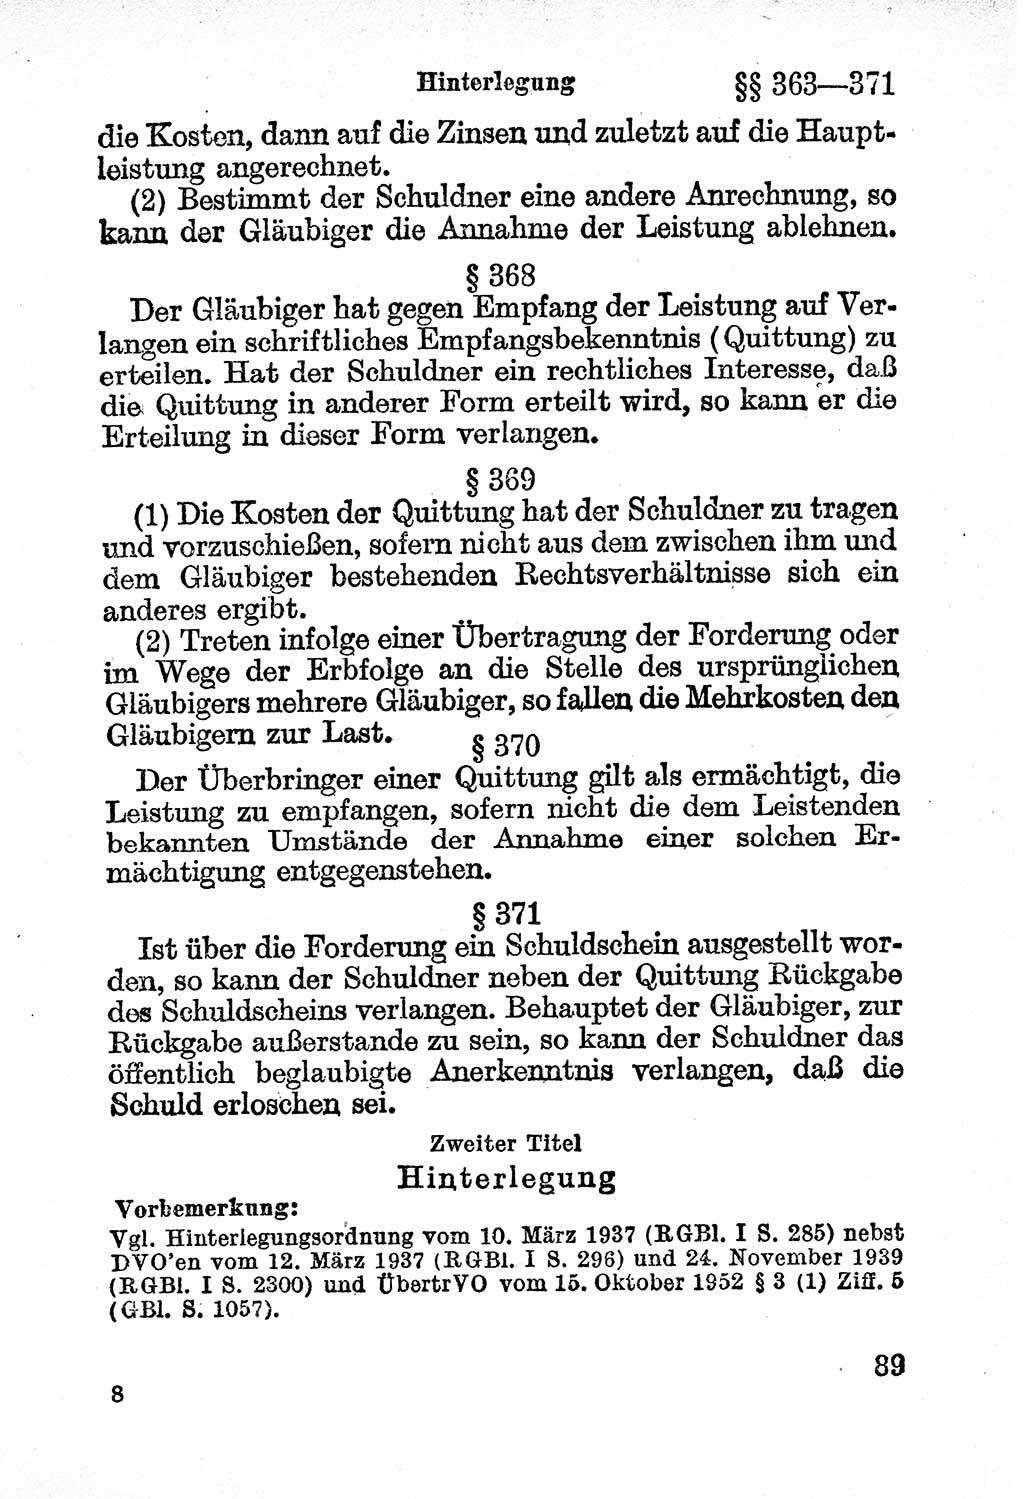 Bürgerliches Gesetzbuch (BGB) nebst wichtigen Nebengesetzen [Deutsche Demokratische Republik (DDR)] 1956, Seite 89 (BGB Nebenges. DDR 1956, S. 89)